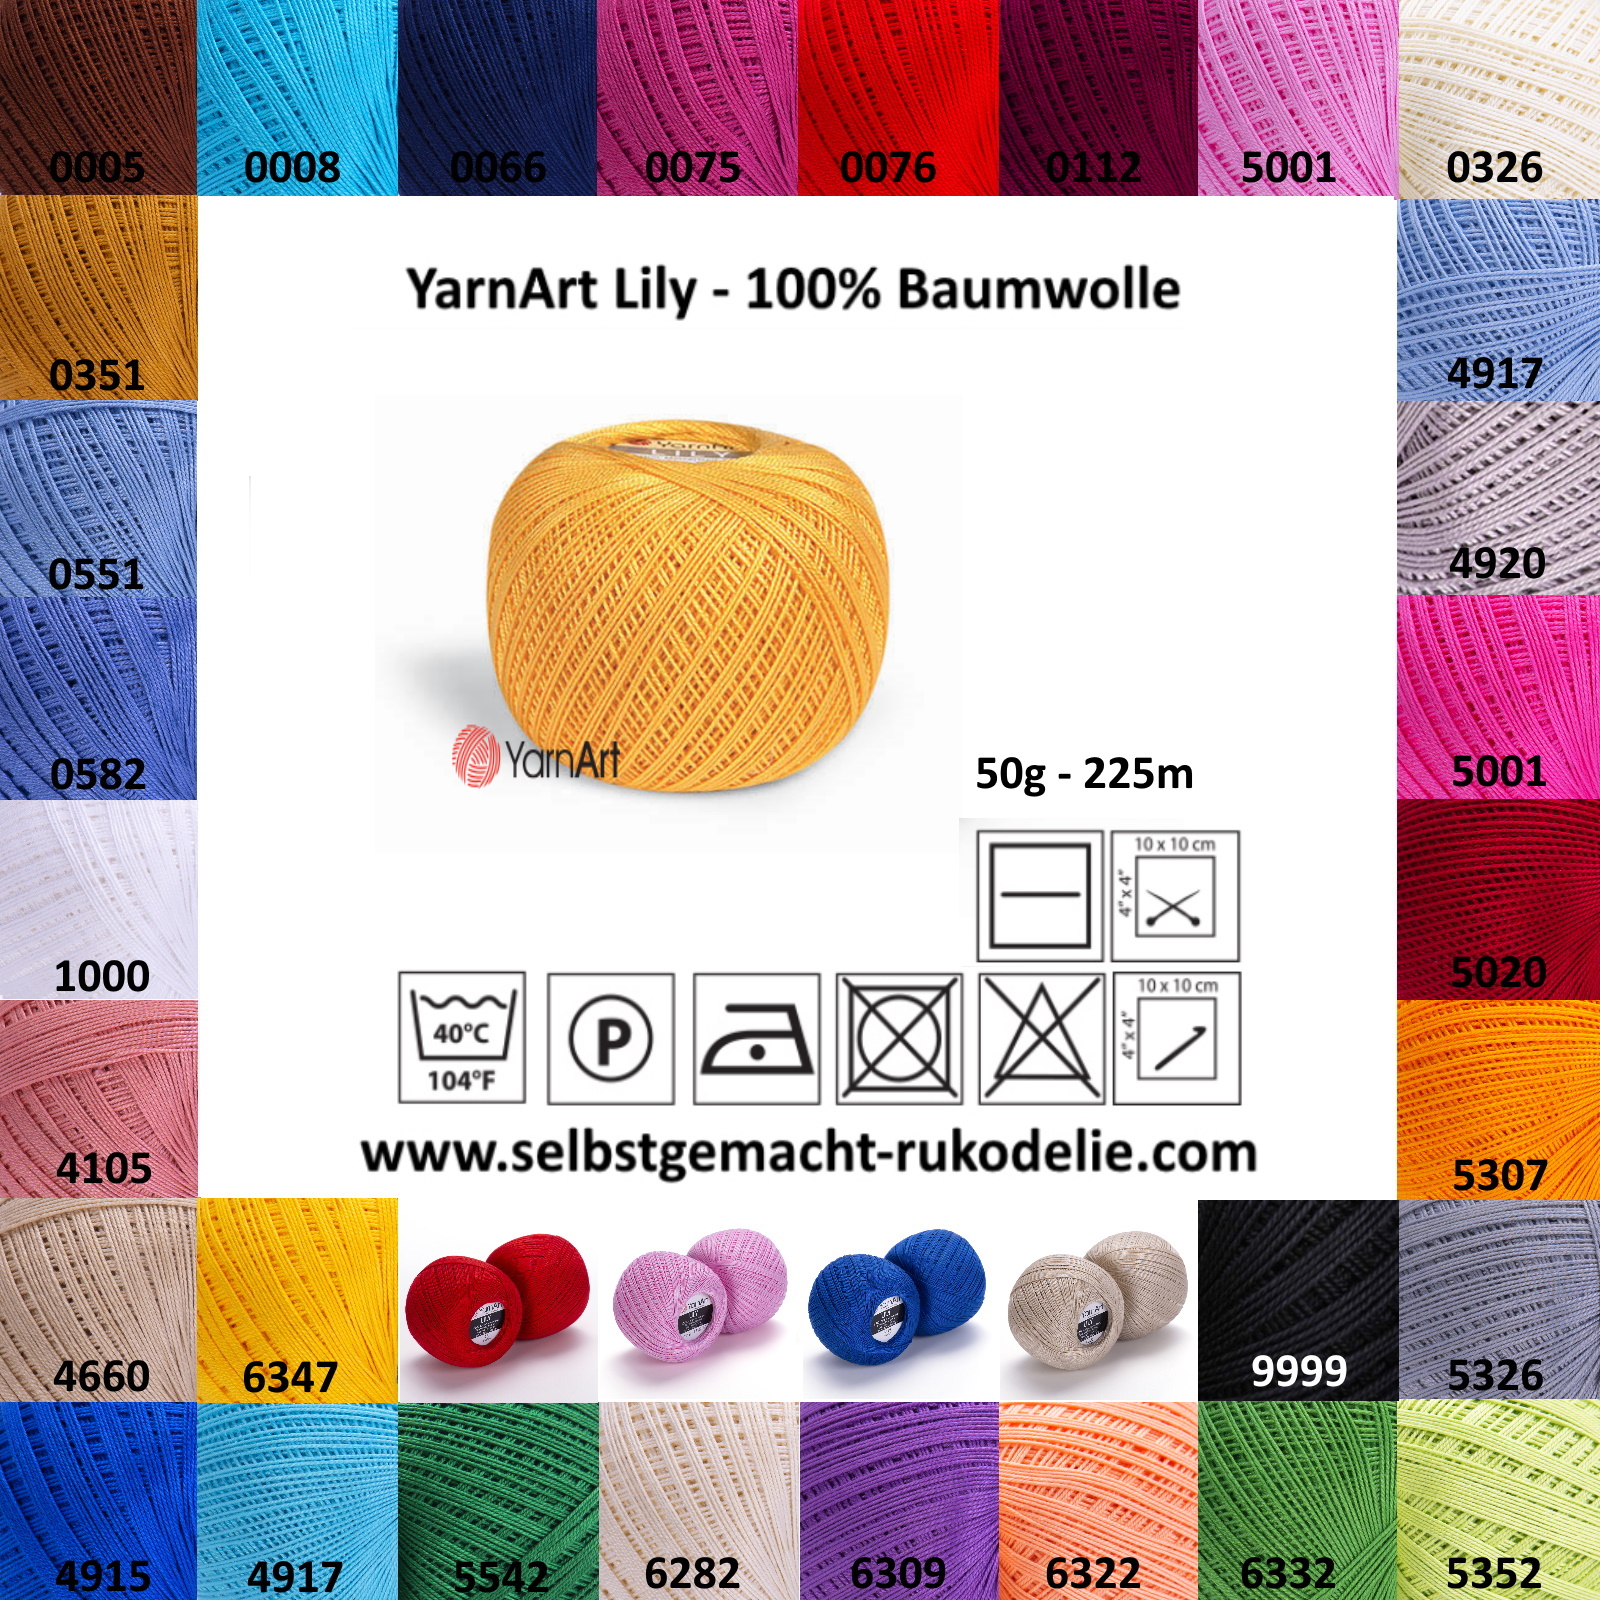 YarnArt Lily - Farbkarte und Eigenschaften